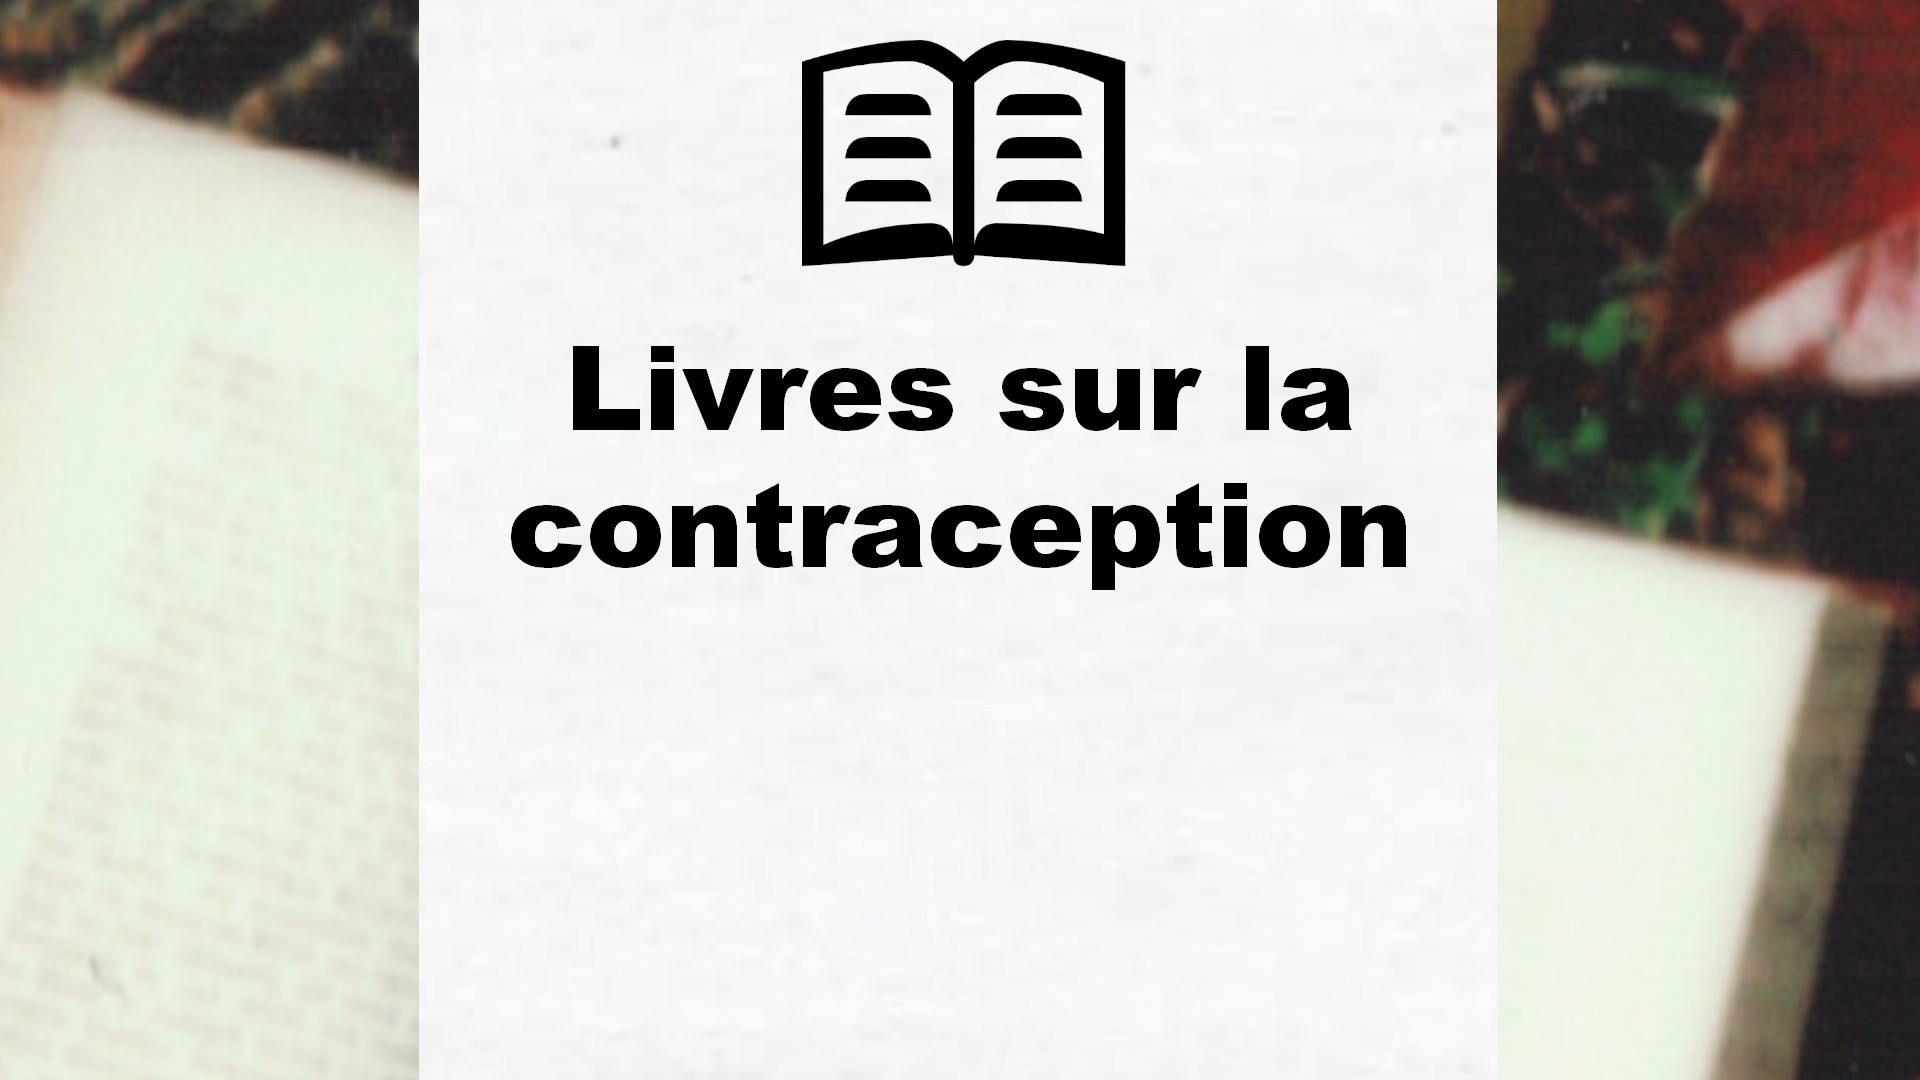 Livres sur la contraception